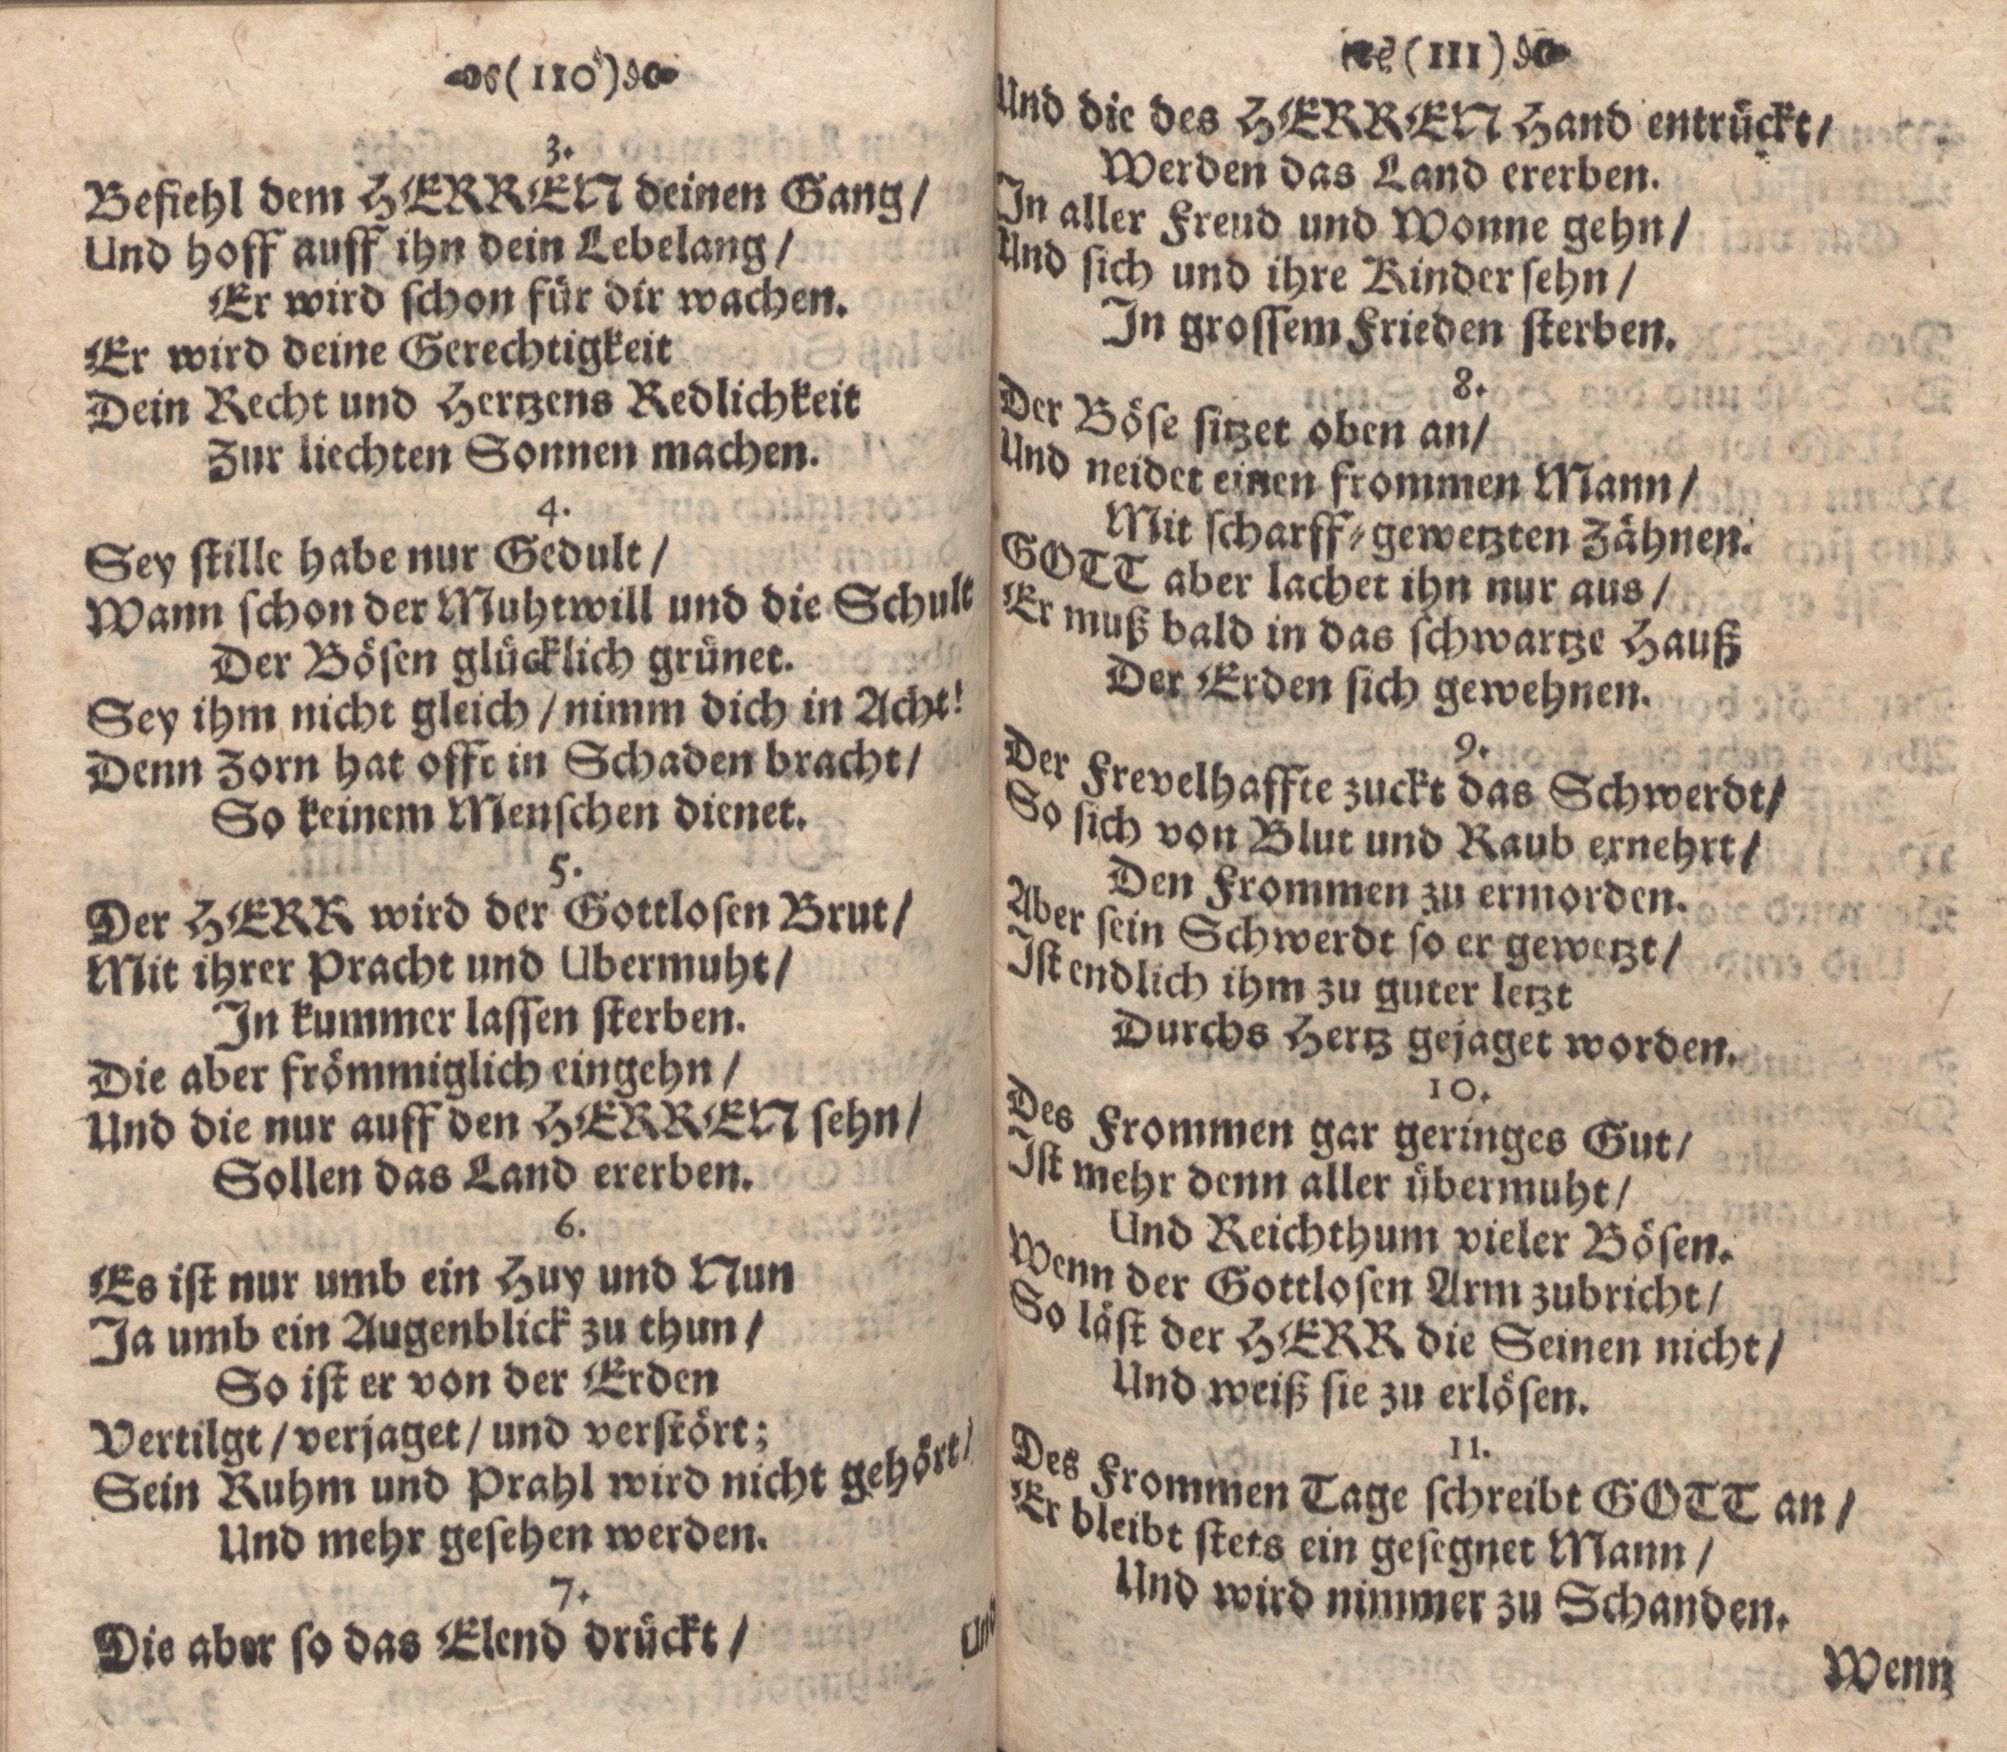 Der Verfolgete, Errettete und Lobsingende David (1686) | 56. (110-111) Põhitekst